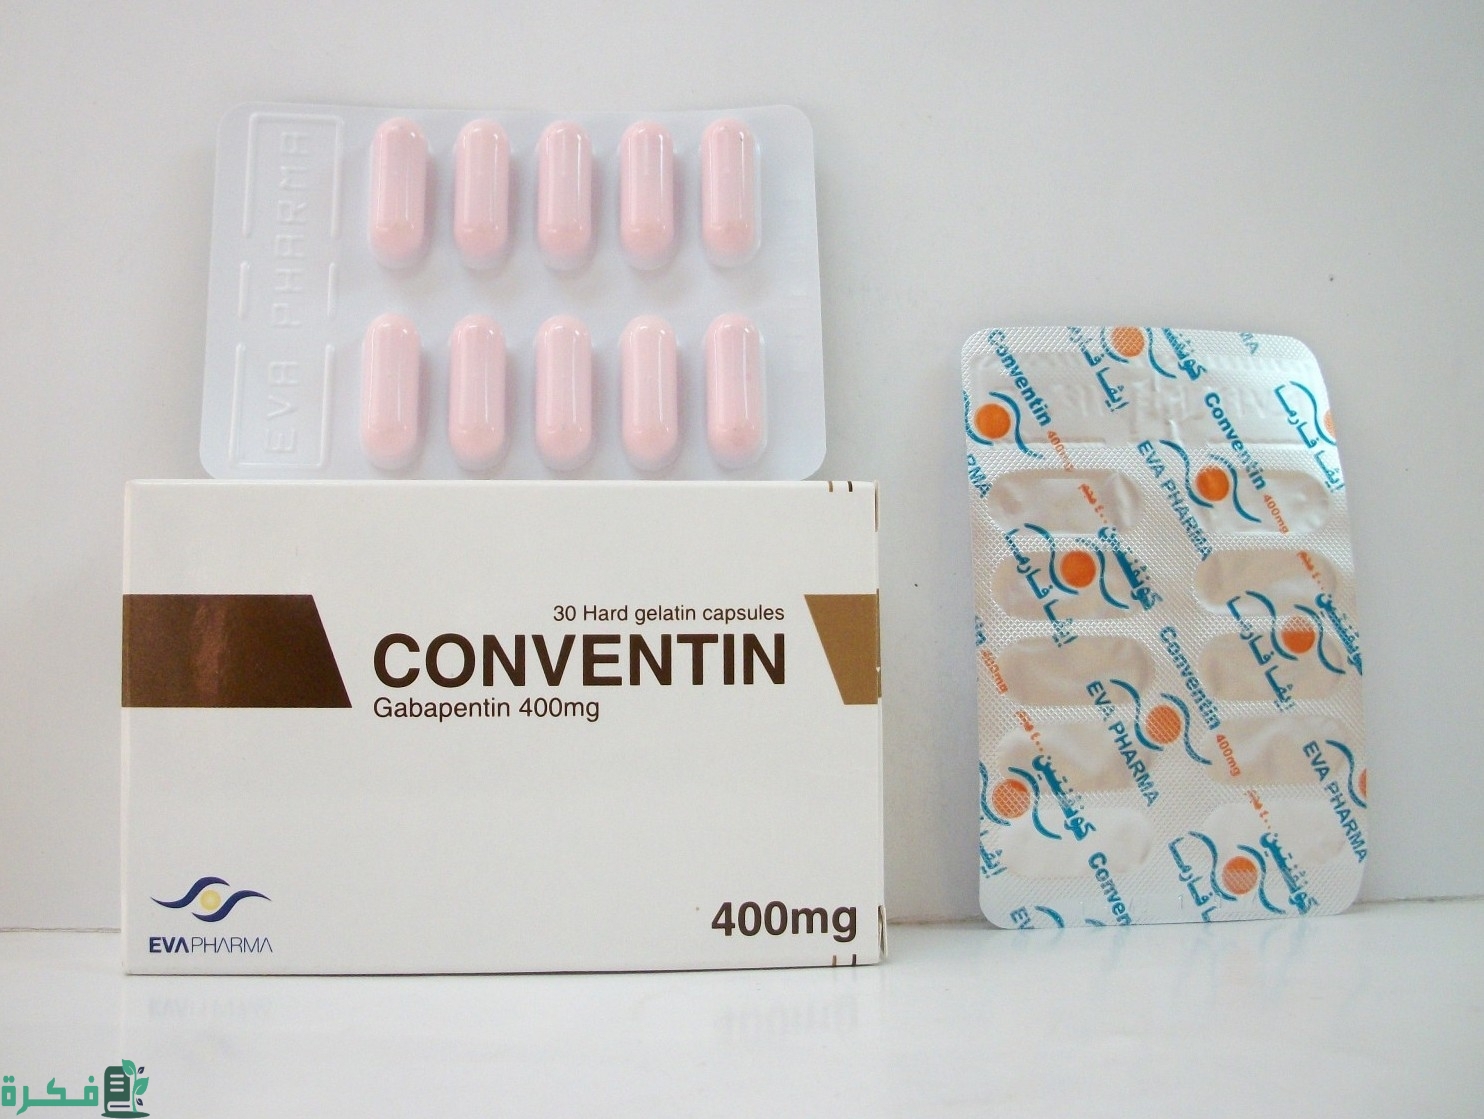 ما العلاقة بين دواء كونفنتين (Conventin) وزيادة الوزن